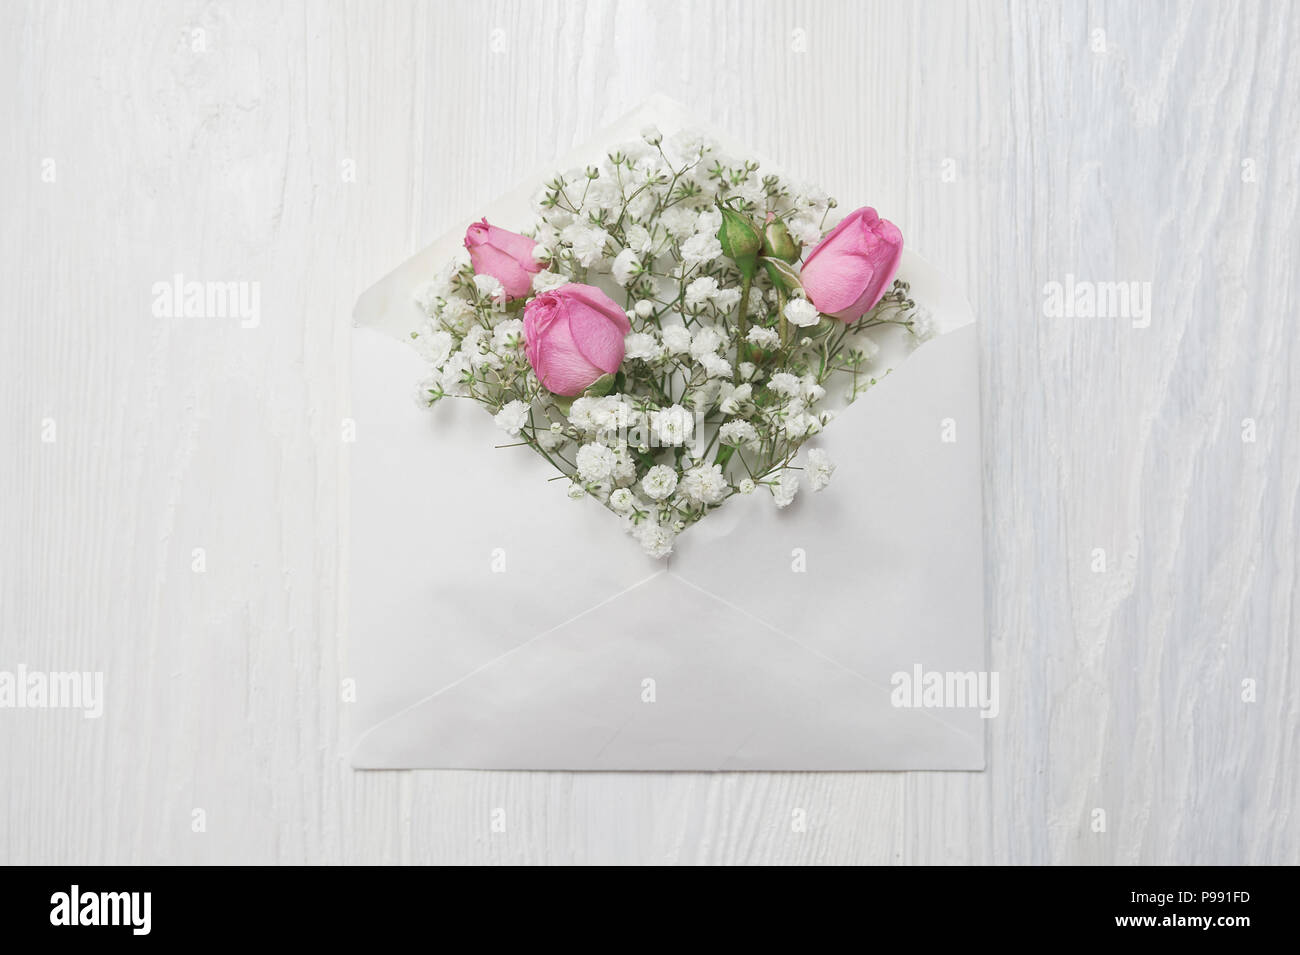 Enveloppe maquette avec des fleurs et une lettre, carte de souhaits pour la Saint-Valentin de mariage avec place pour votre texte. Mise à plat, haut voir photo maquette Banque D'Images